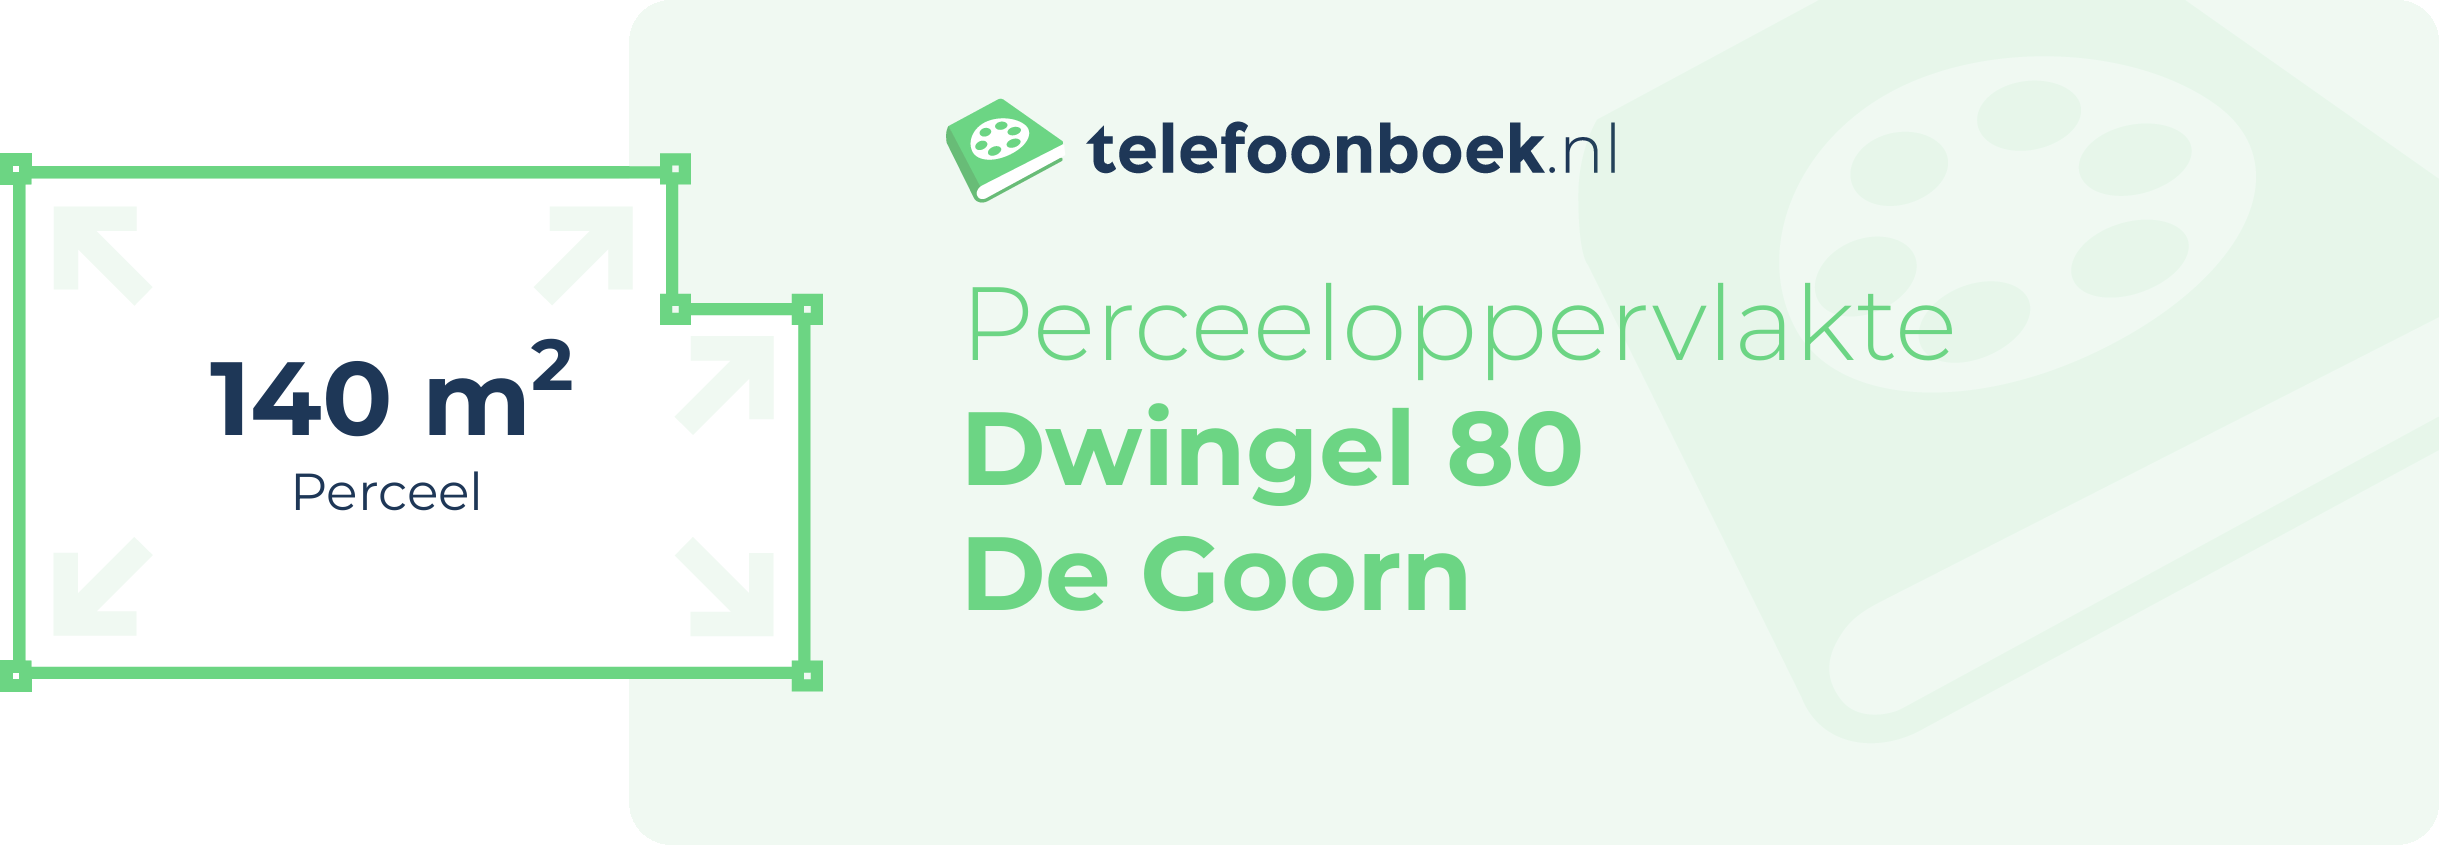 Perceeloppervlakte Dwingel 80 De Goorn